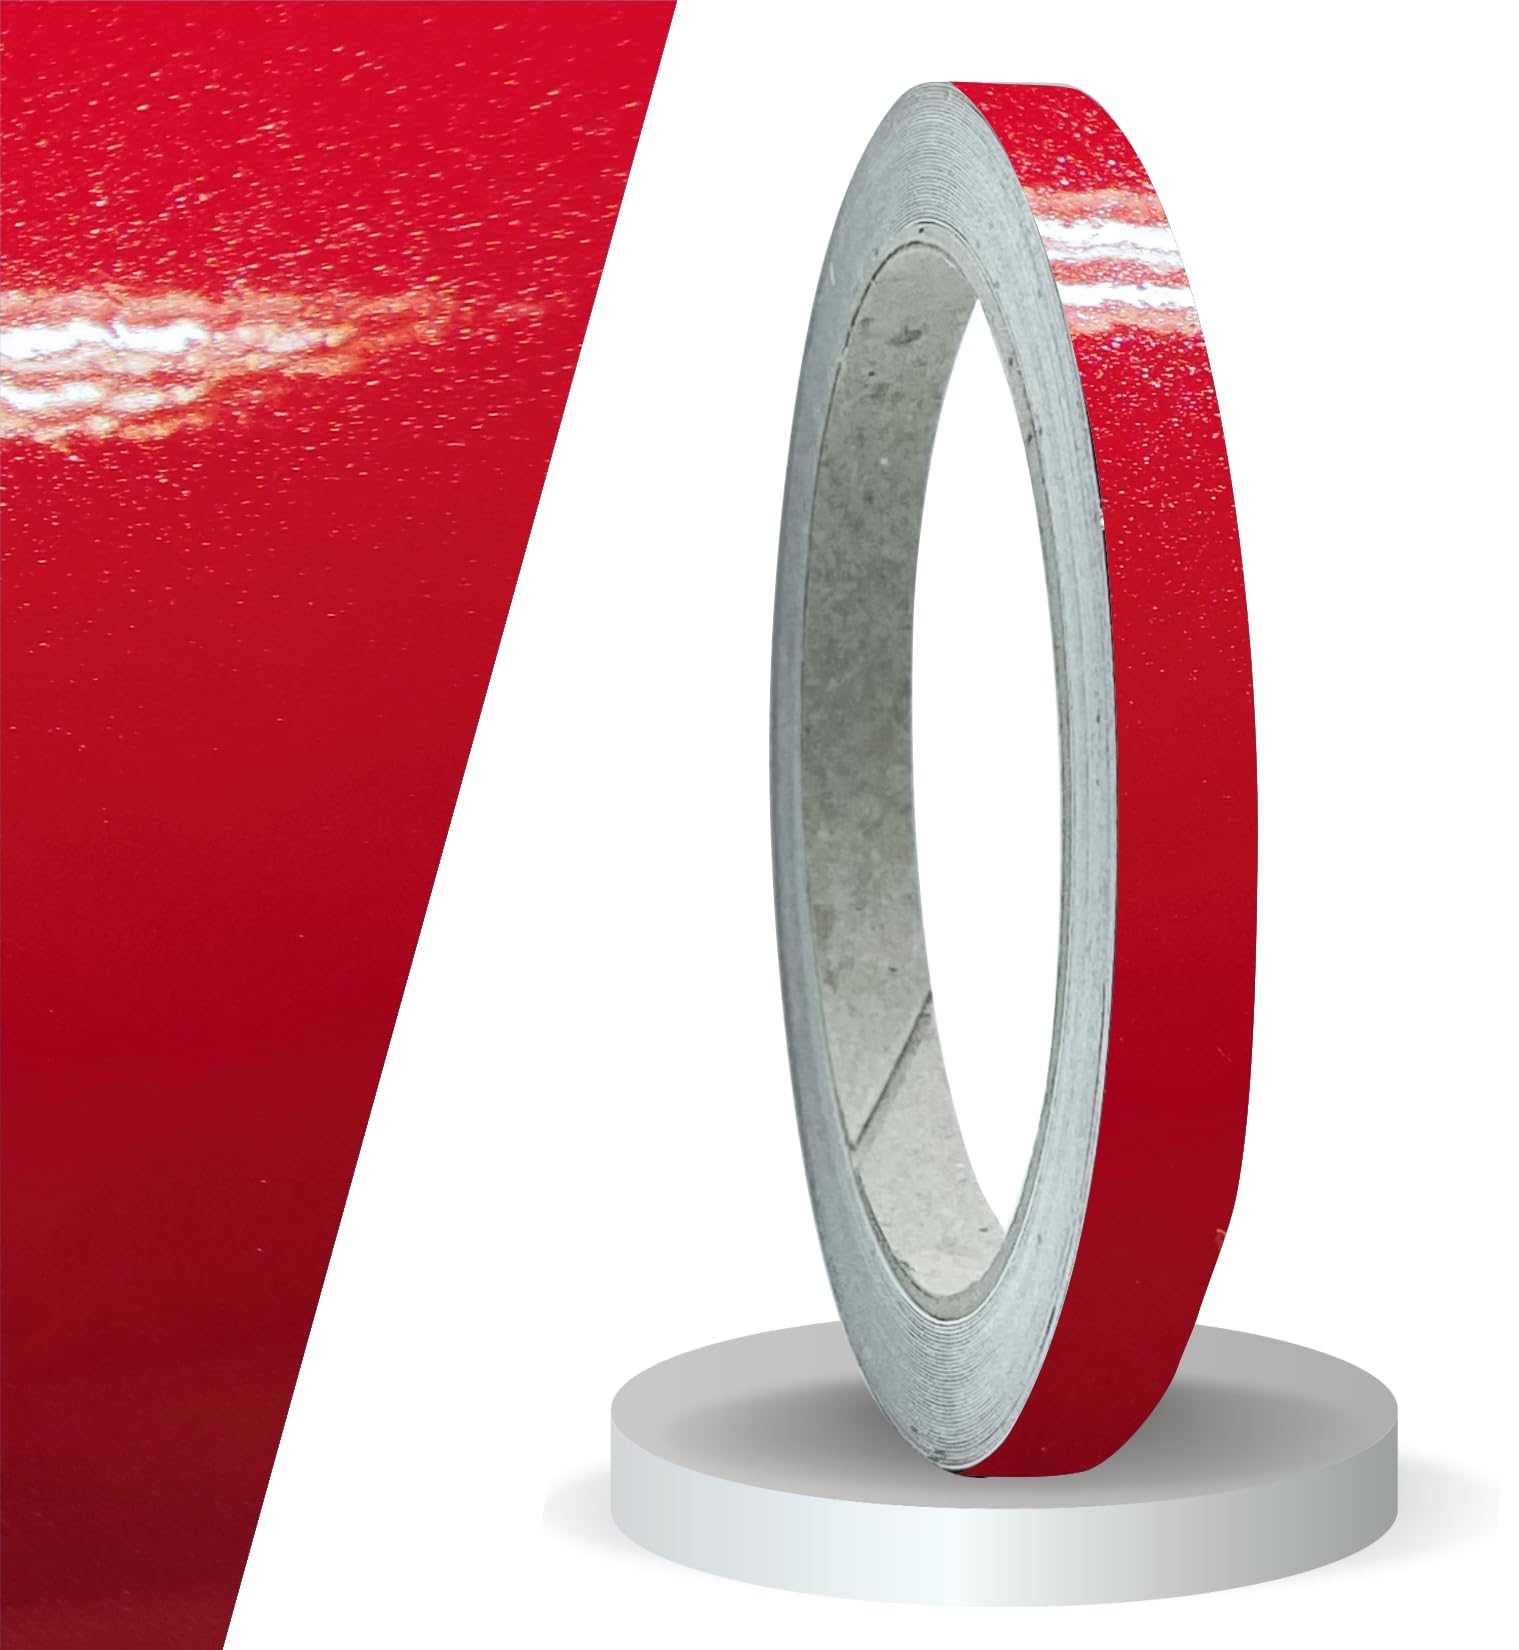 siviwonder Zierstreifen rot metallic Glanz in 10 mm Breite und 10 m Länge Aufkleber Folie für Auto Boot Jetski Modellbau Klebeband Dekorstreifen von siviwonder